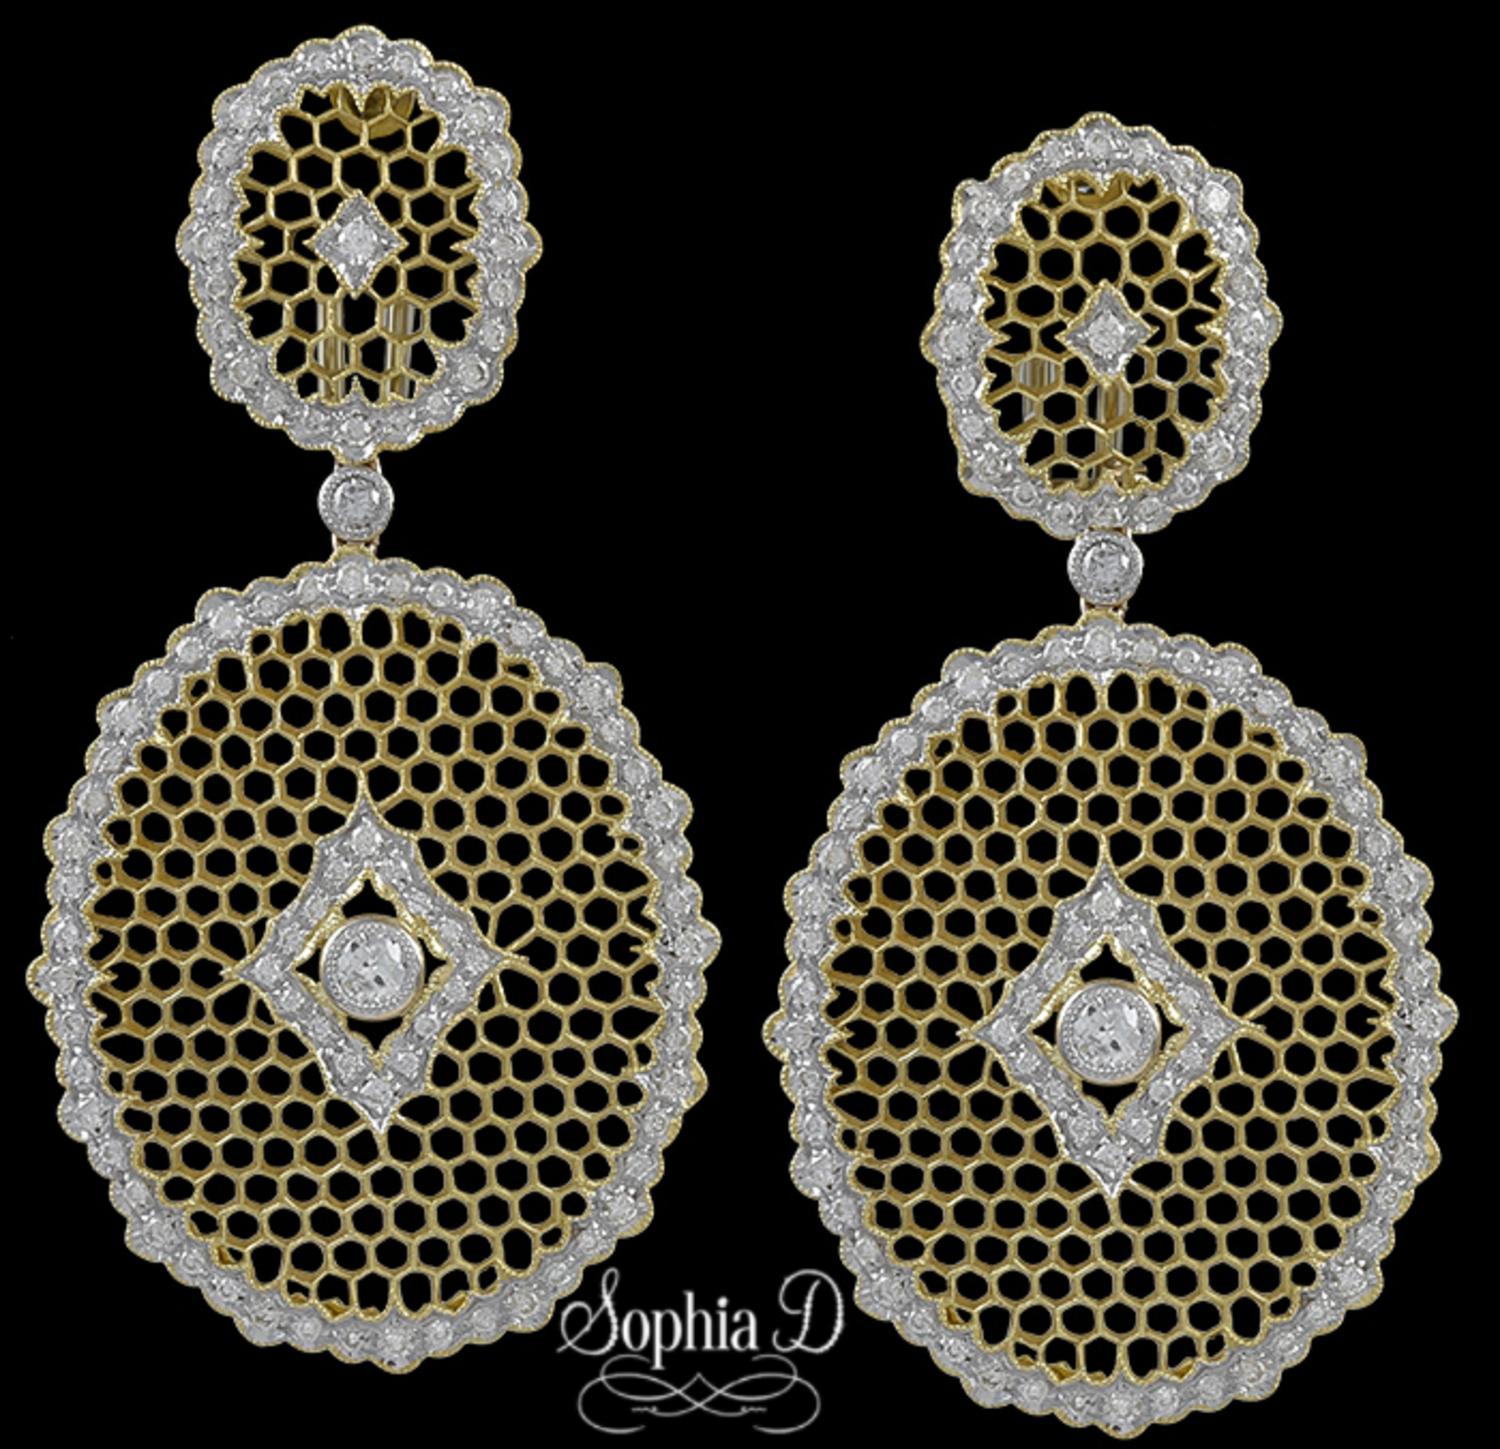  Boucles d'oreilles Sophia D en or jaune 18 carats avec 2,08 carats de diamants.

Sophia D by Joseph Dardashti Ltd est connue dans le monde entier depuis 35 ans et s'inspire du design classique de l'Art déco qui fusionne avec les techniques de